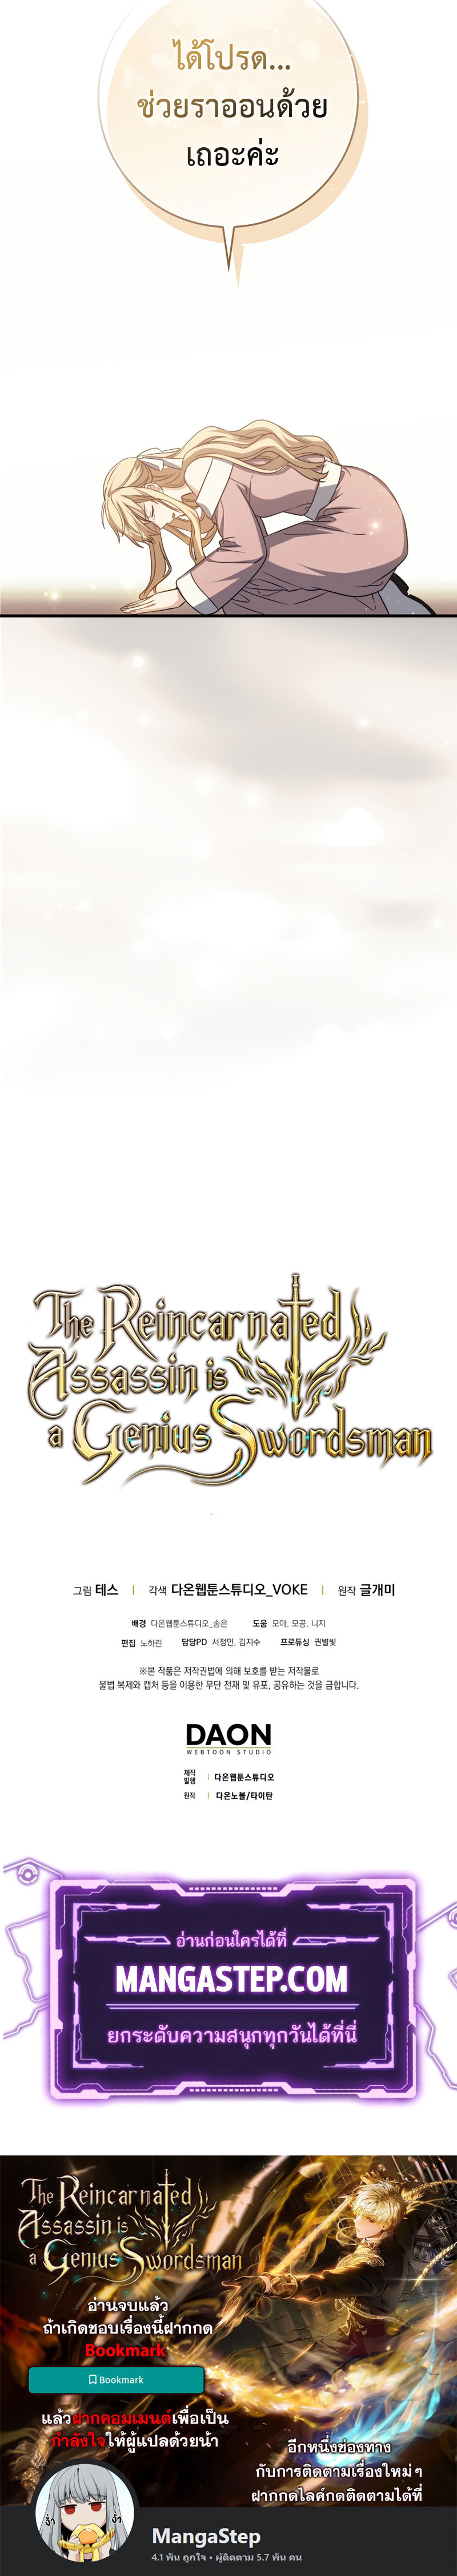 Genius Swordsman 2 (27)